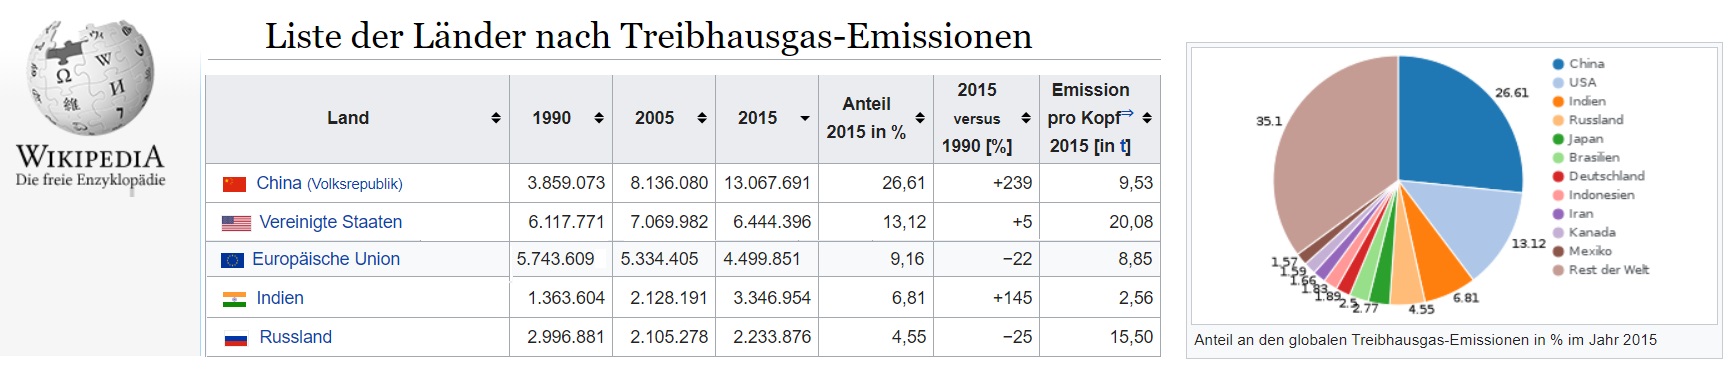 Wikipedia Treibhausgas Emissionen 2015